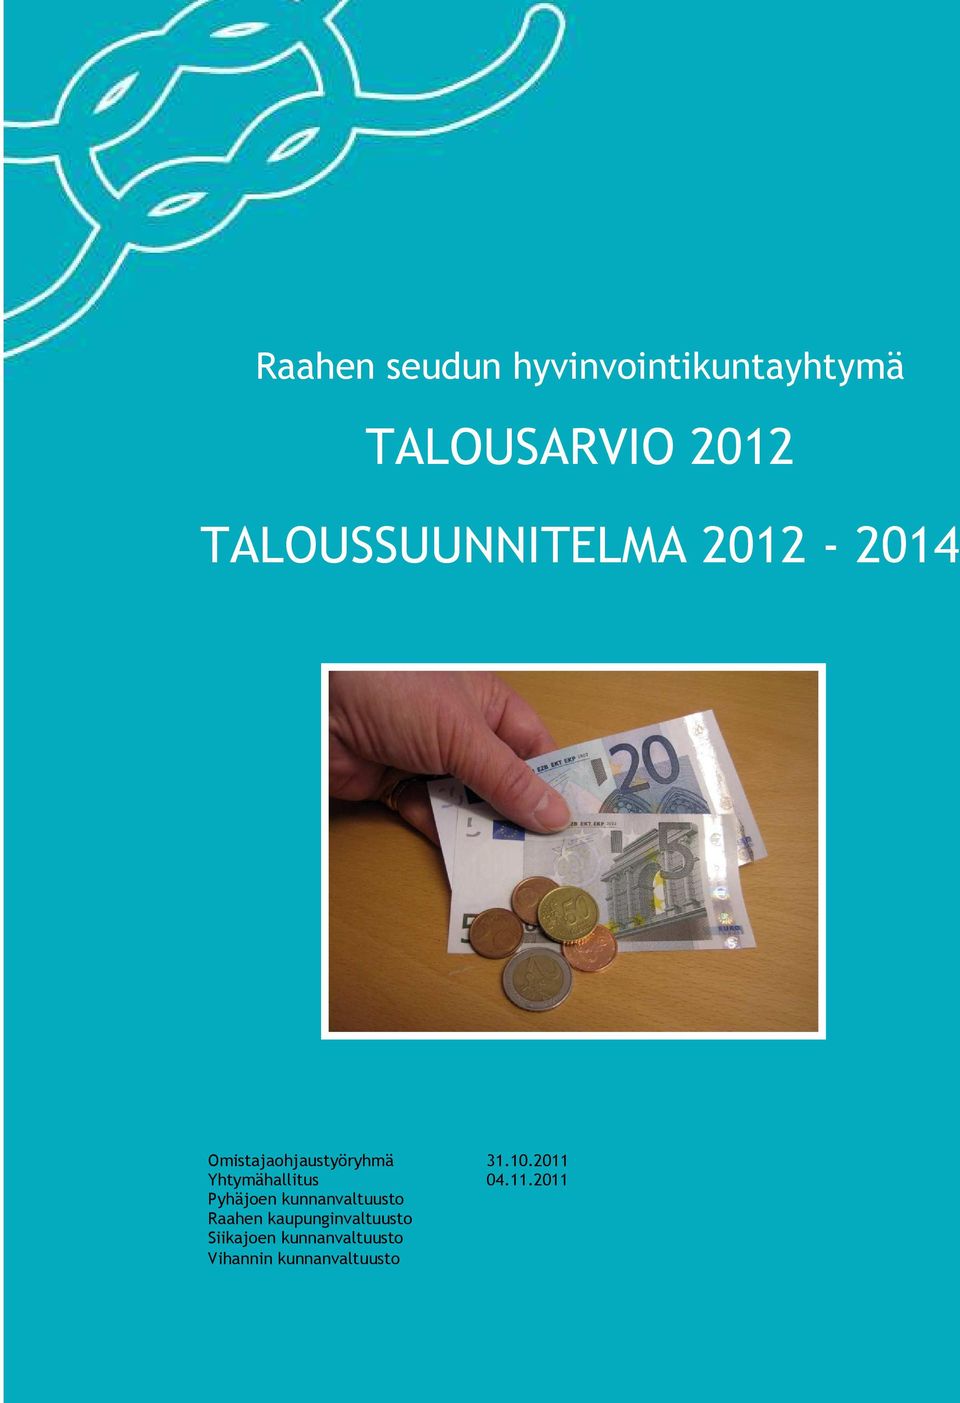 2011 Yhtymähallitus 04.11.2011 Pyhäjoen kunnanvaltuusto